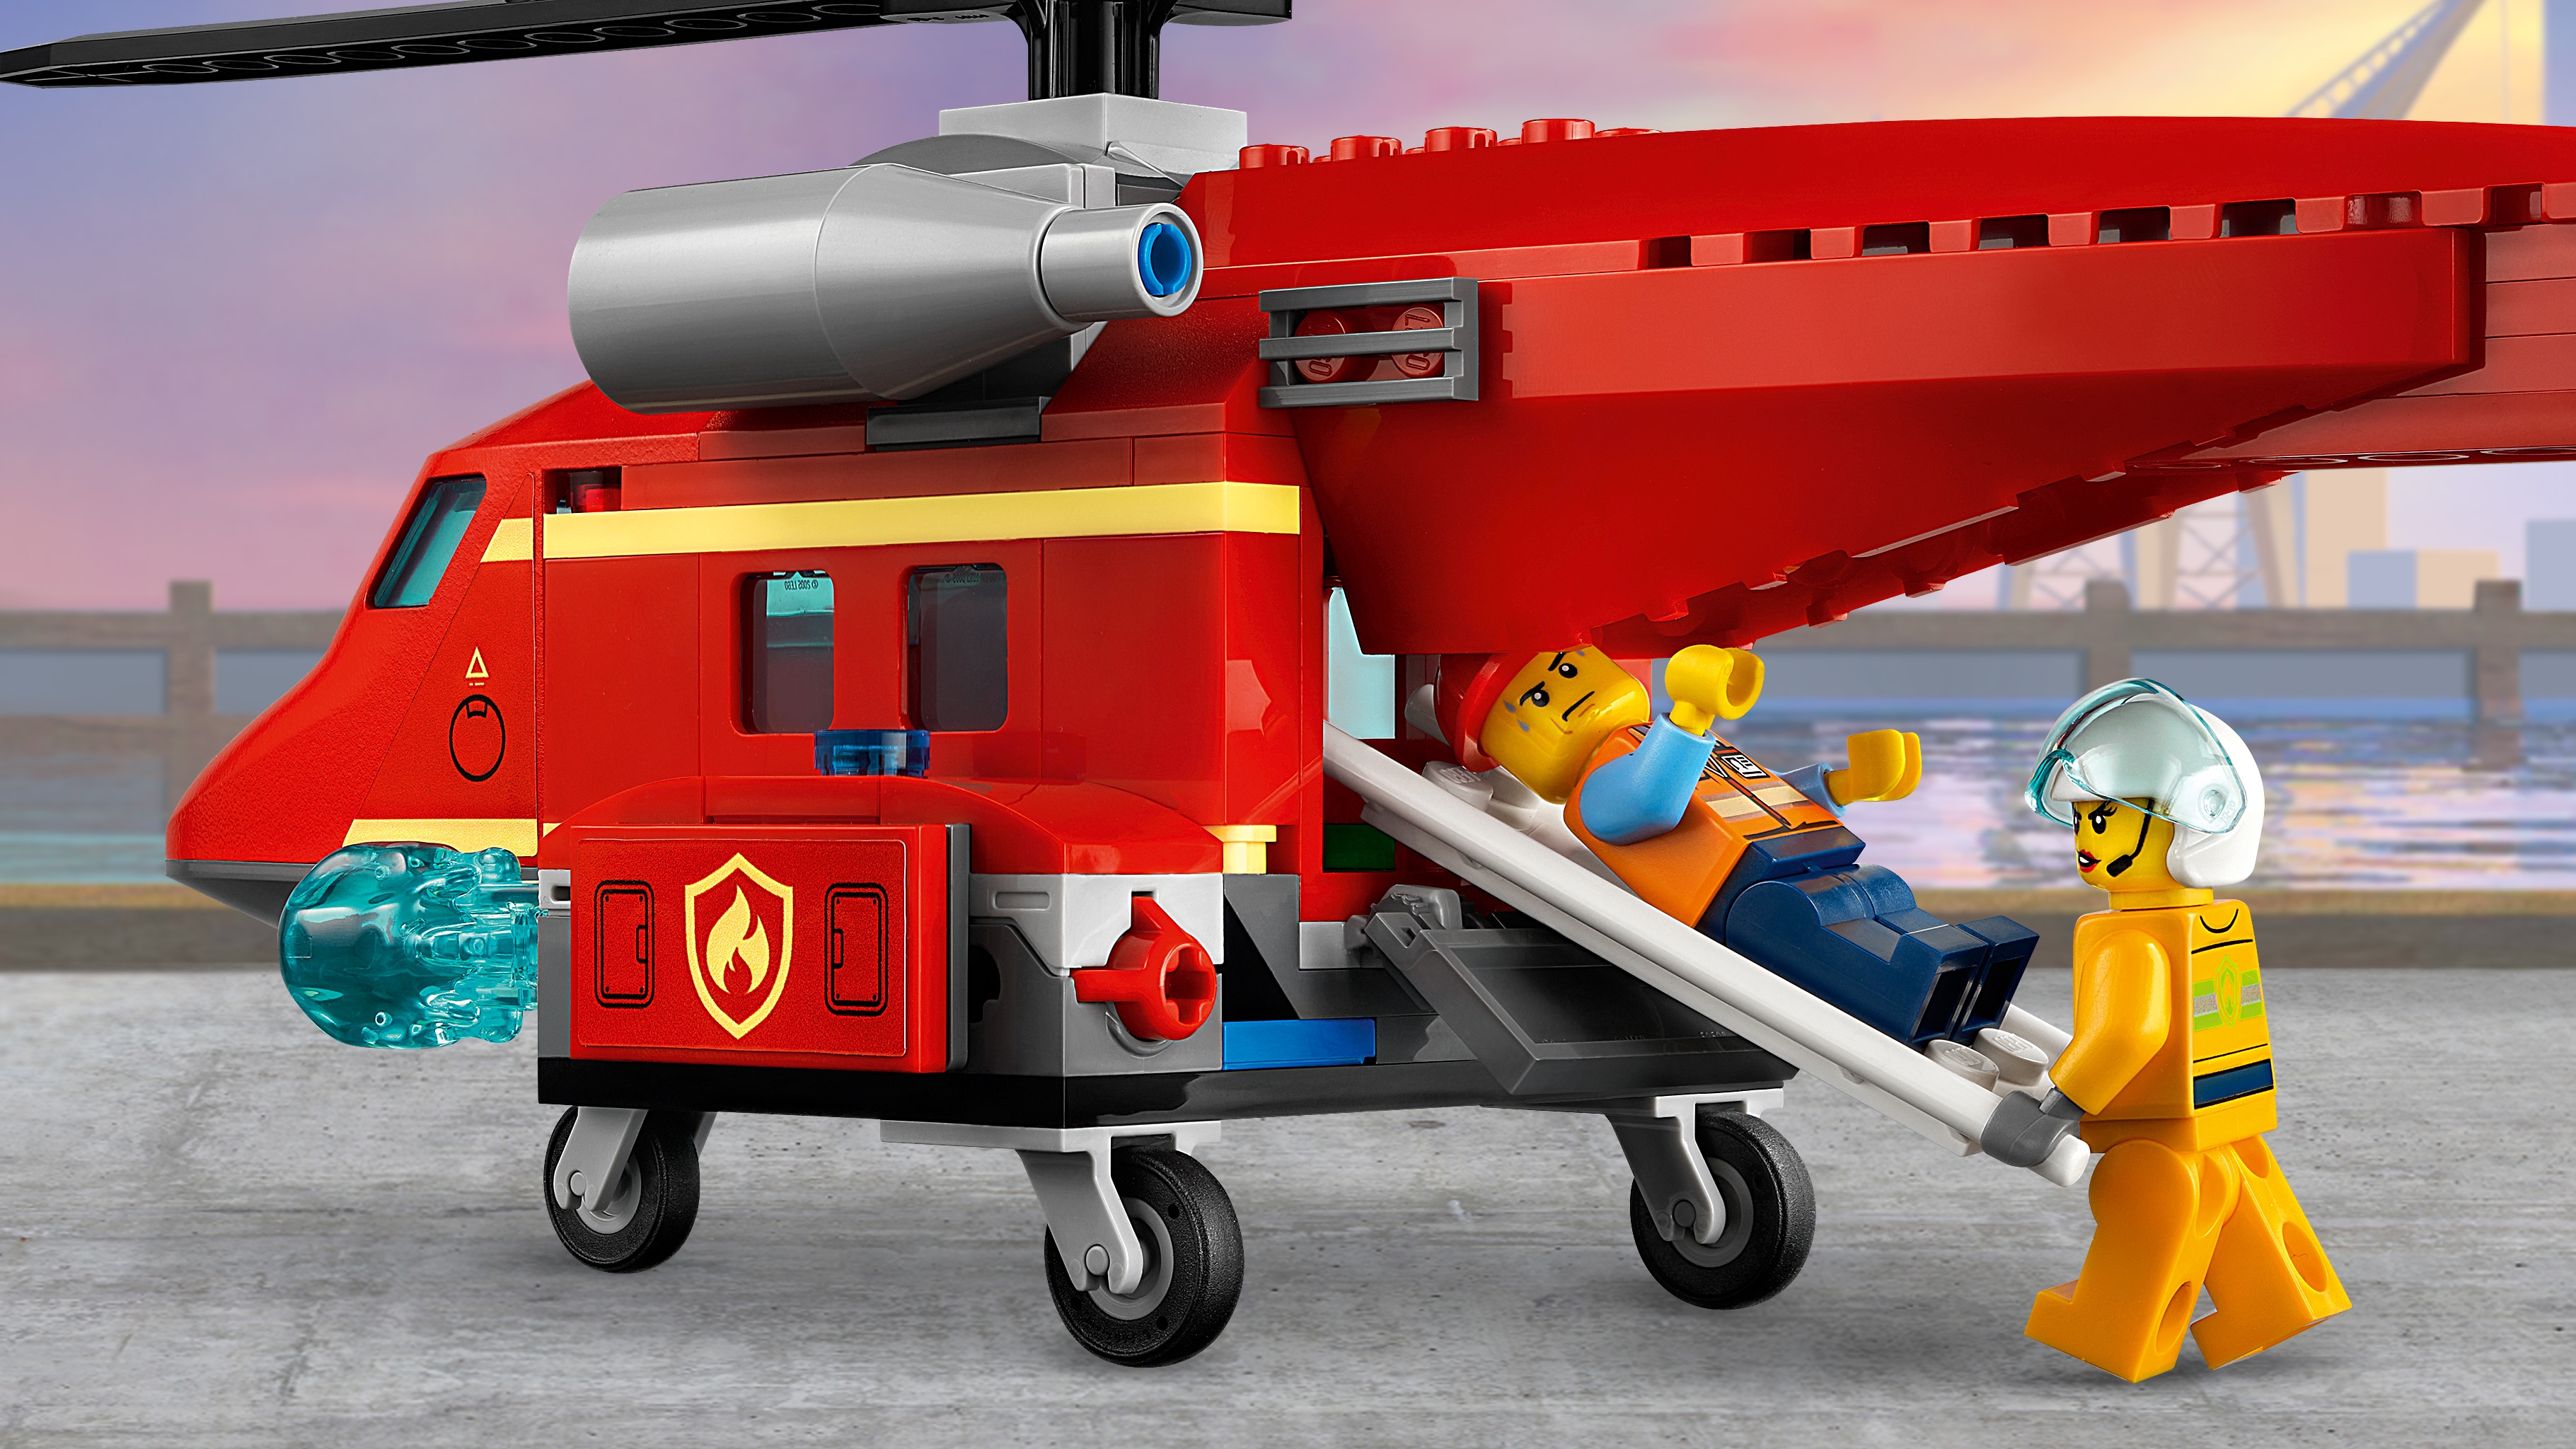 消防レスキューヘリ 60281 - レゴ®シティ セット - LEGO.comキッズ